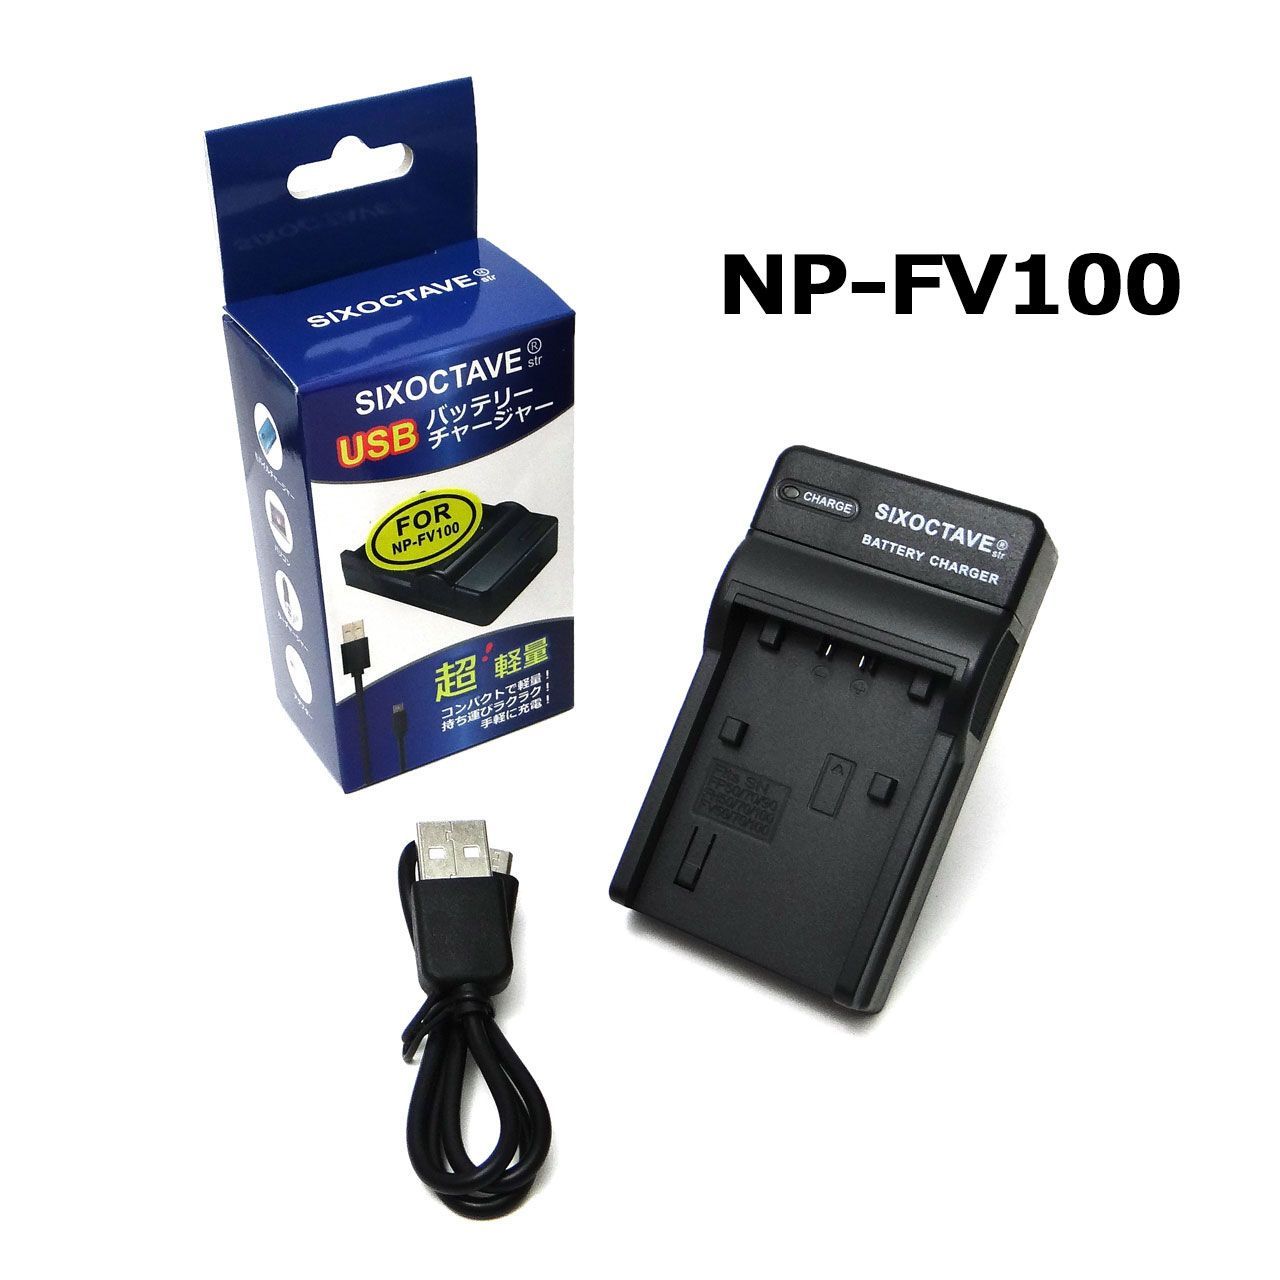 NP-FV100 対応 ソニー SIXOCTAVE 互換USBチャージャー - メルカリ